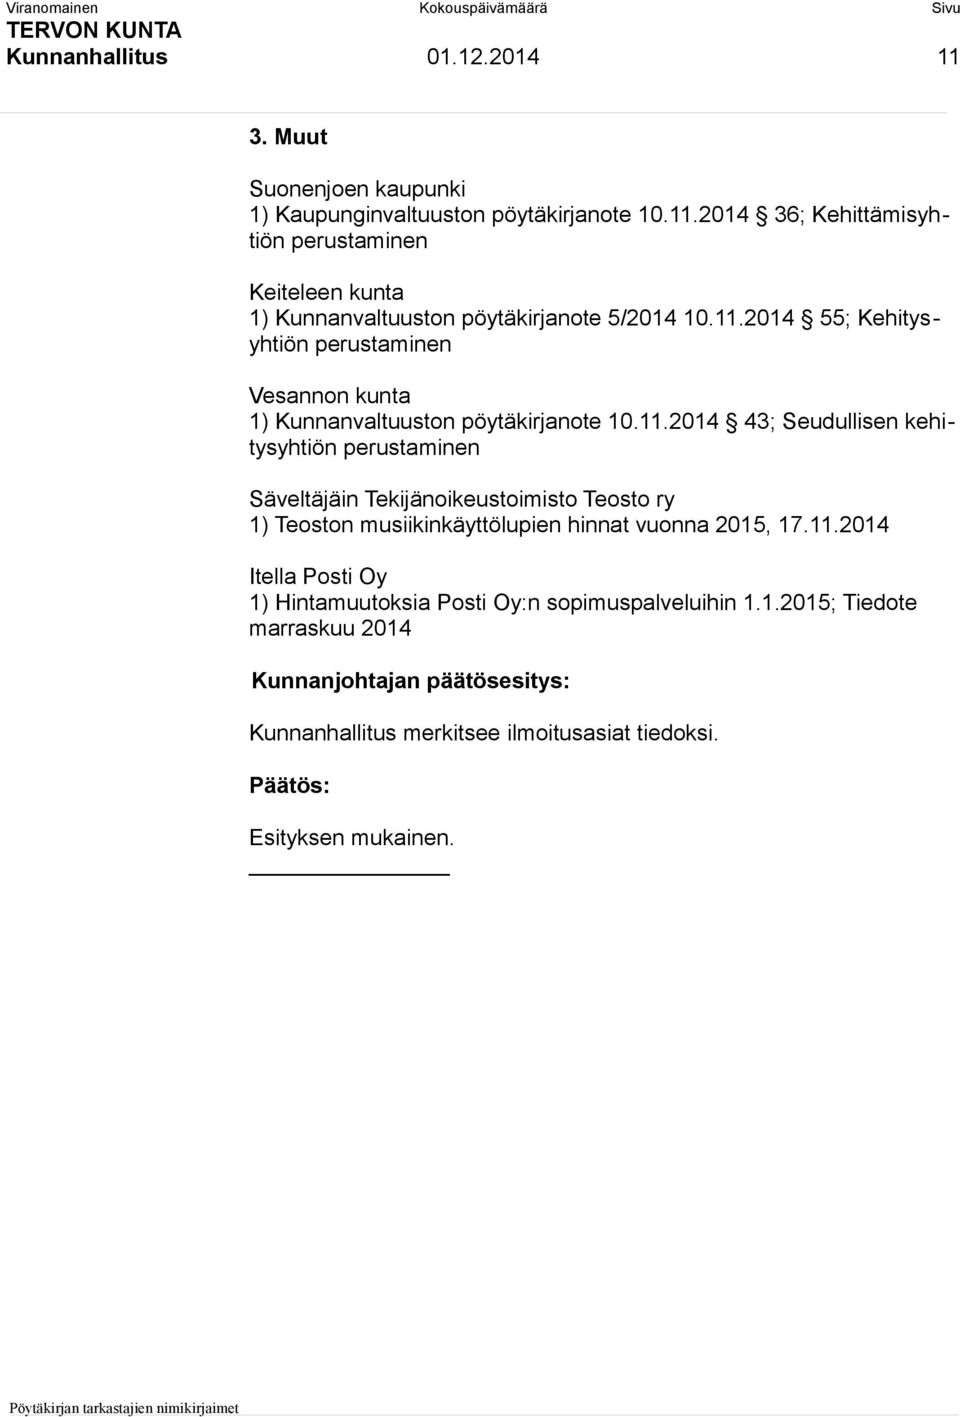 11.2014 Itella Posti Oy 1) Hintamuutoksia Posti Oy:n sopimuspalveluihin 1.1.2015; Tiedote marraskuu 2014 Kunnanhallitus merkitsee ilmoitusasiat tiedoksi.